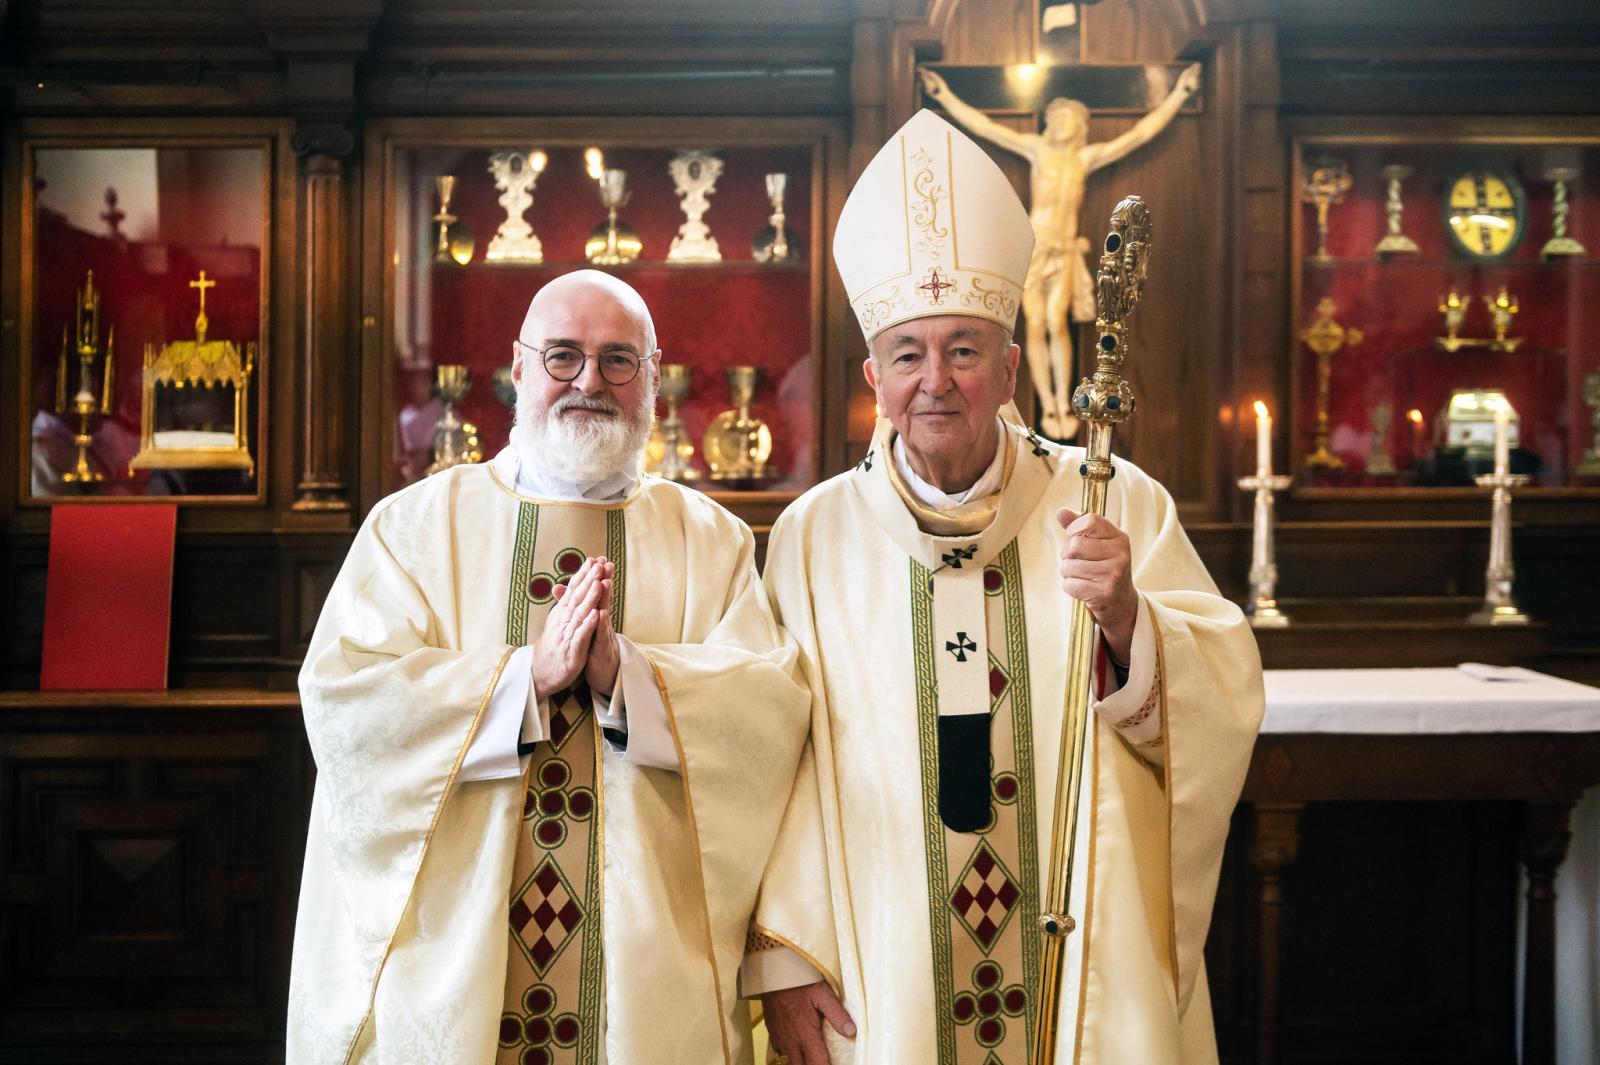 Cardinal ordains Jonathan Goodall to the priesthood